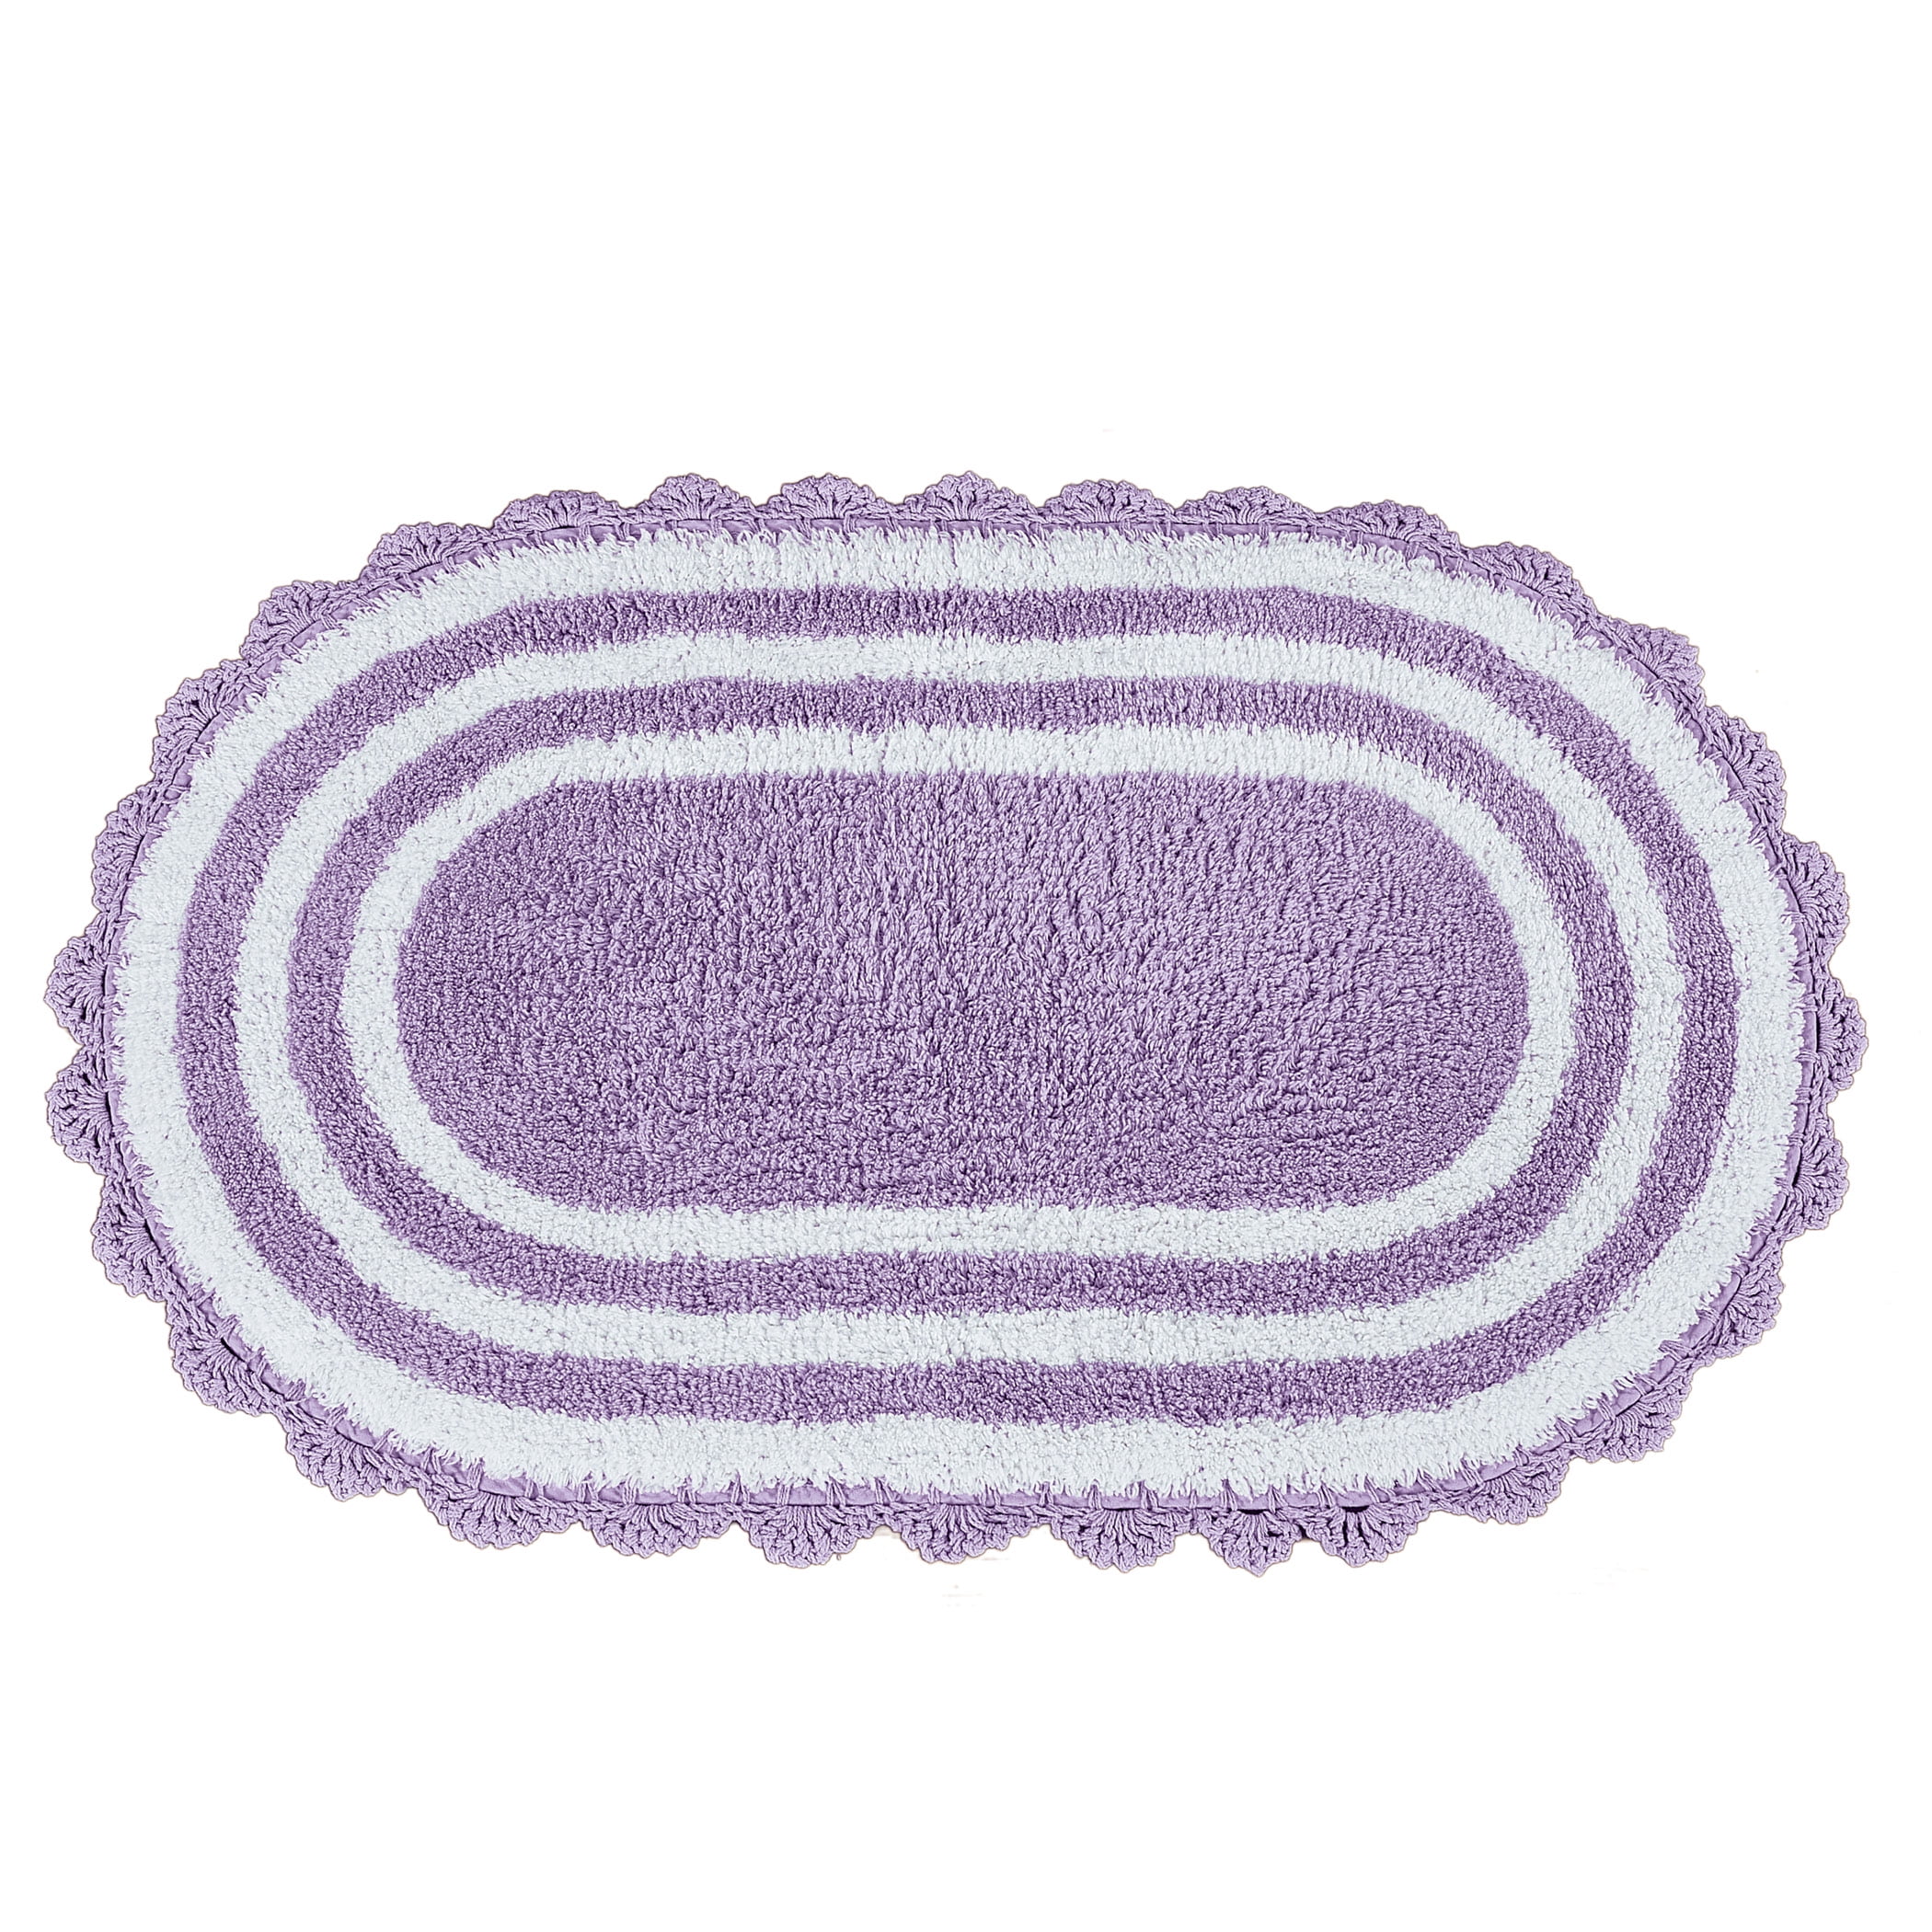 Details about   100% Cotton Crochet Large Oval Luxury Spa Soft Bath Rug Bathroom Vanit Carpet 